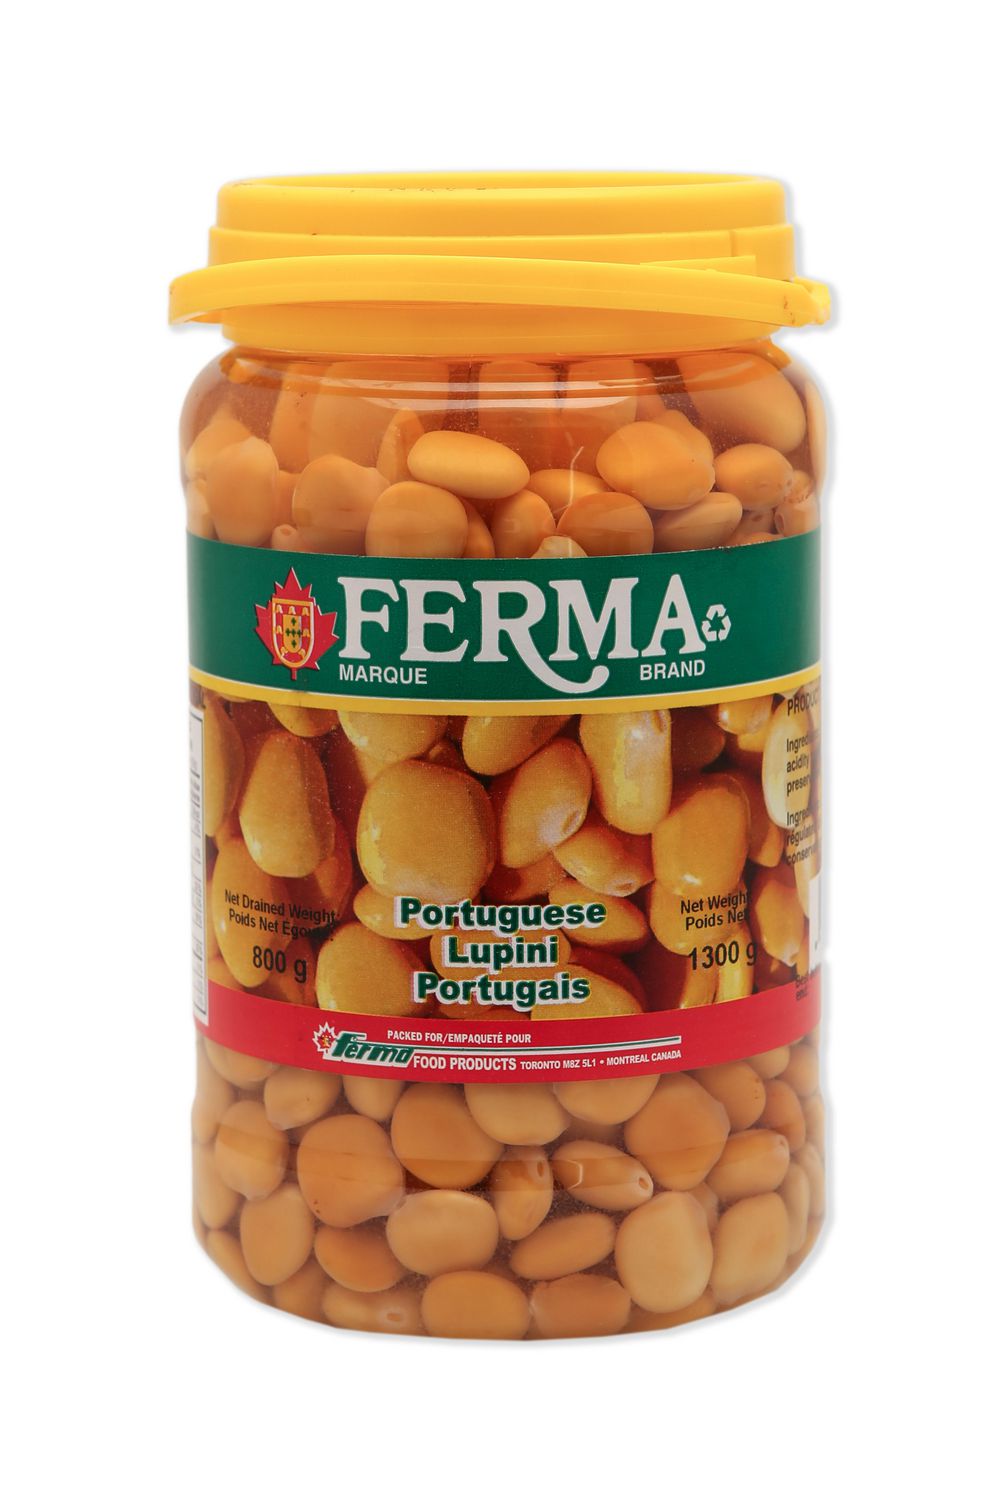 Ferma Portuguese lupini beans | Walmart Canada